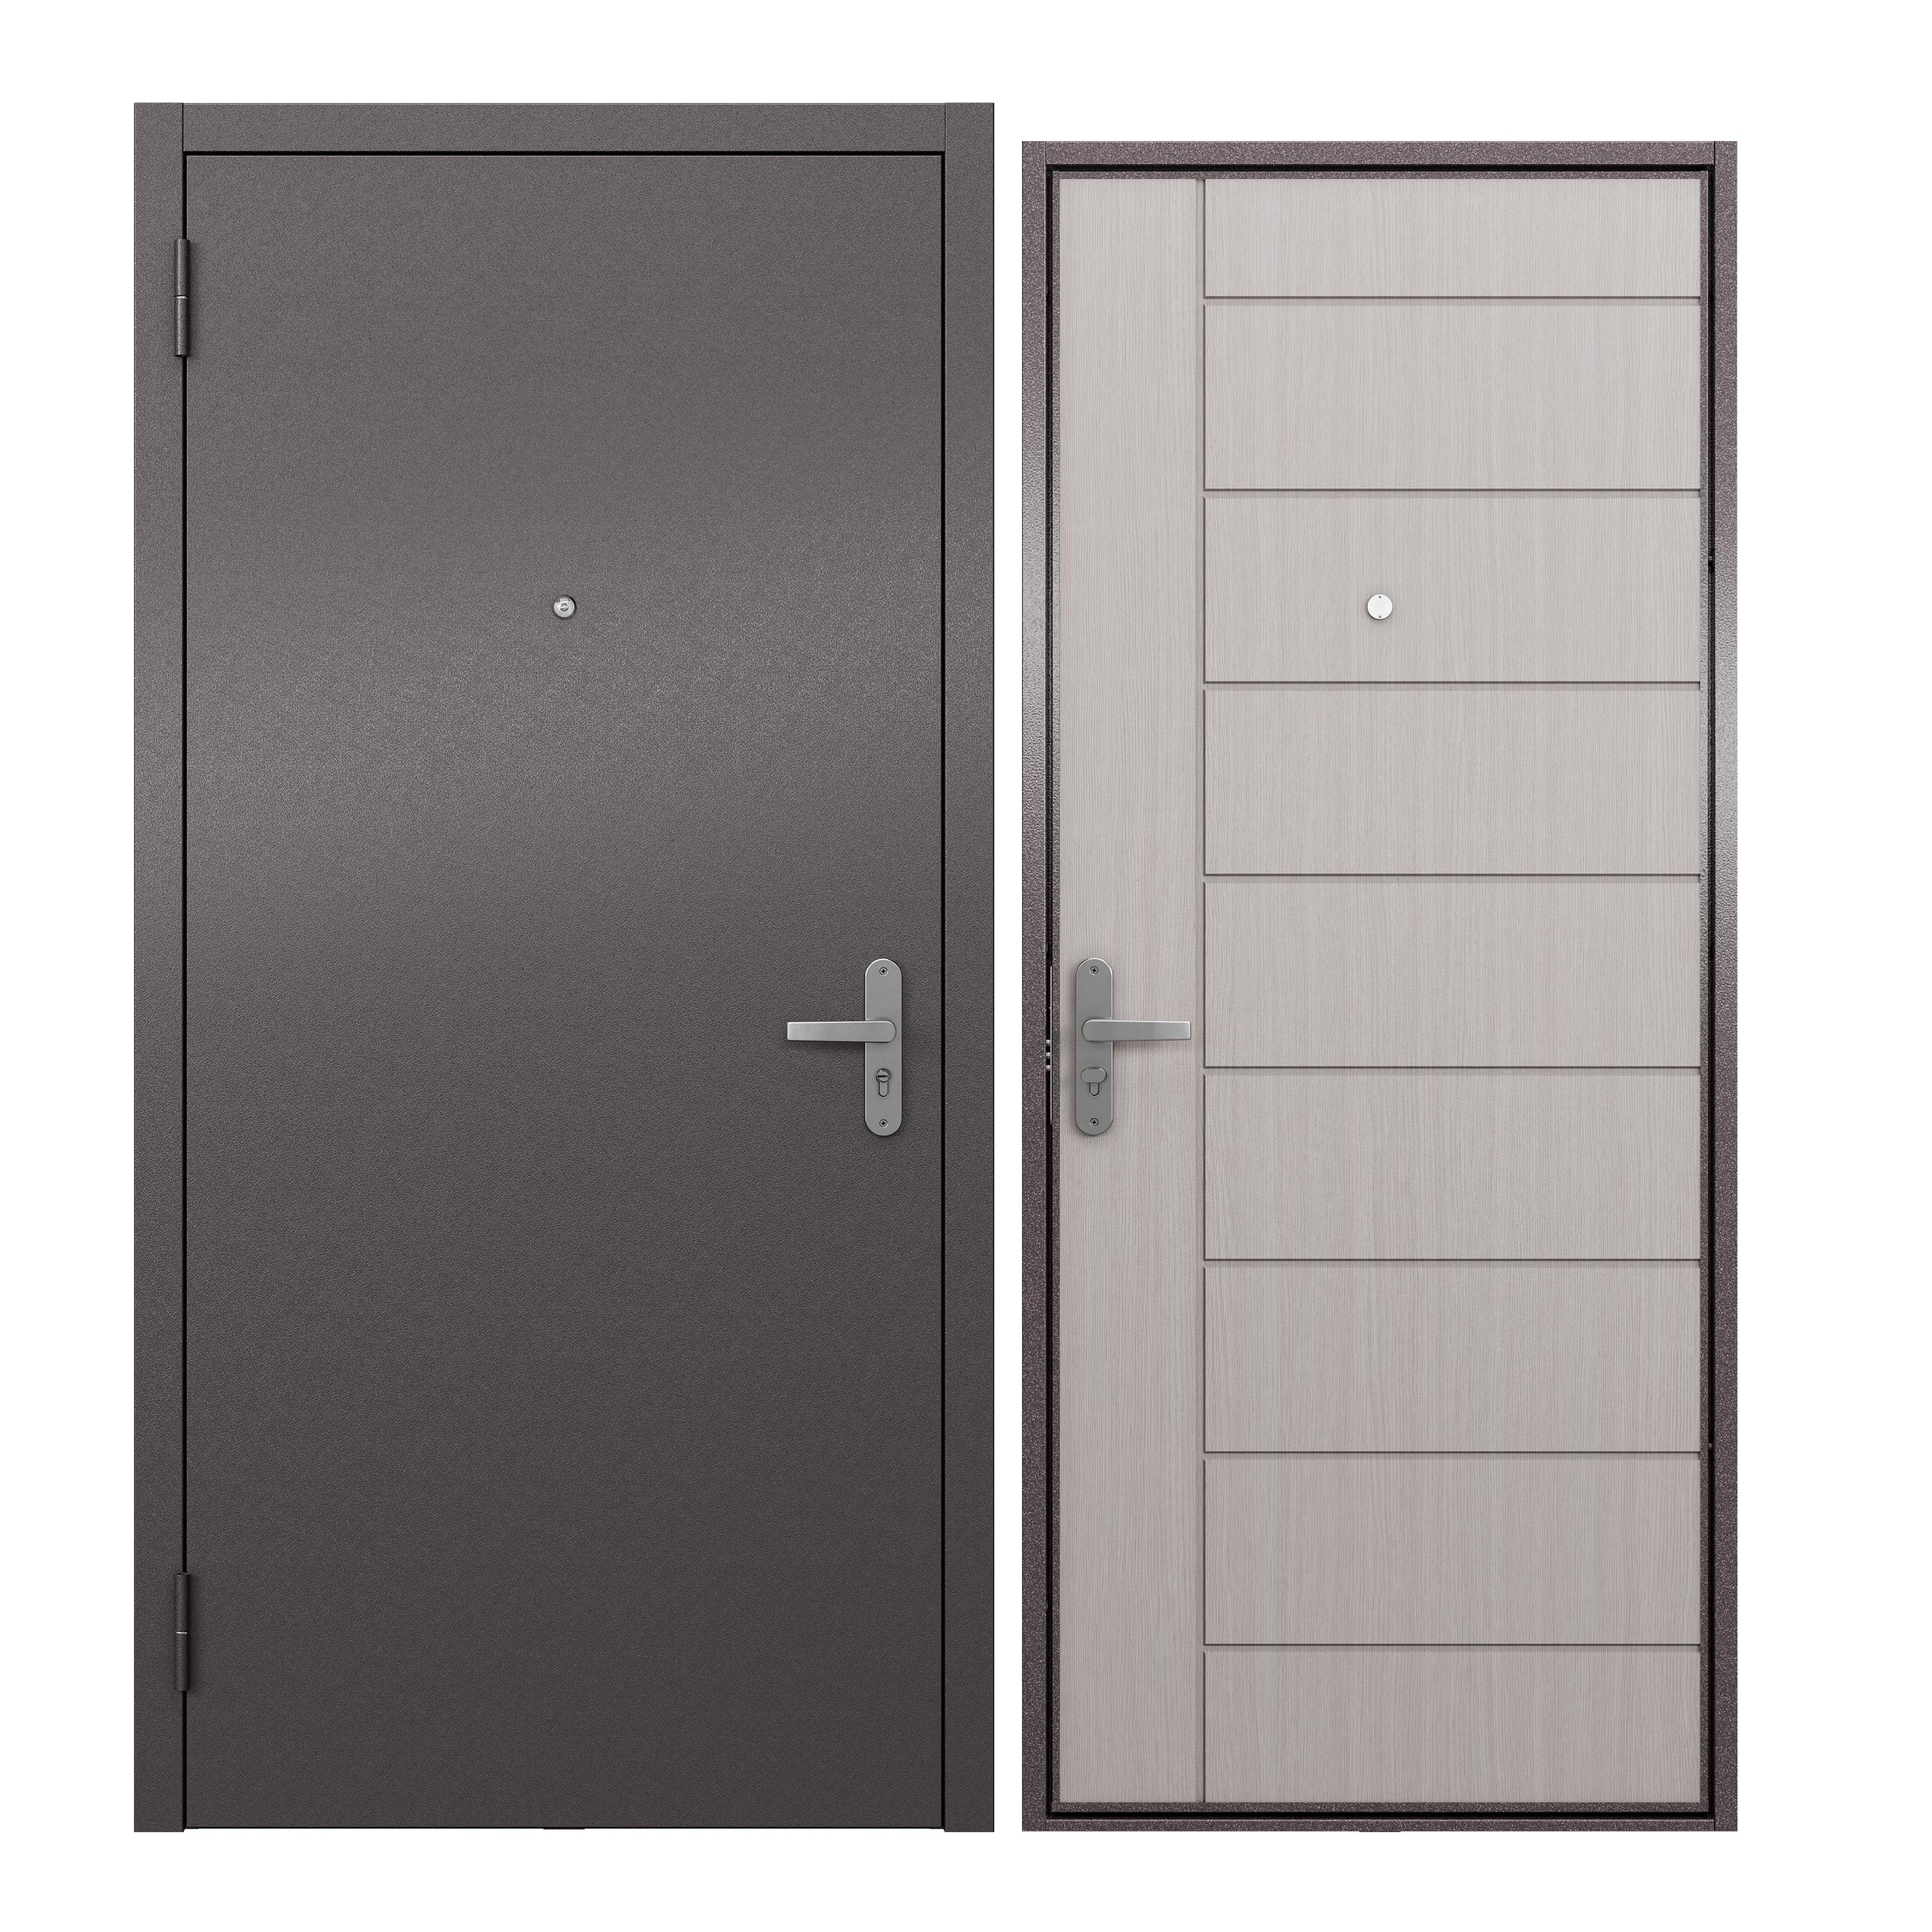 Дверь входная для квартиры ProLine металлическая Terminal A 860х2050, левая, белый дверь входная buldoors ютта левая букле шоколад ларче бьянко с зеркалом 960х2050 мм